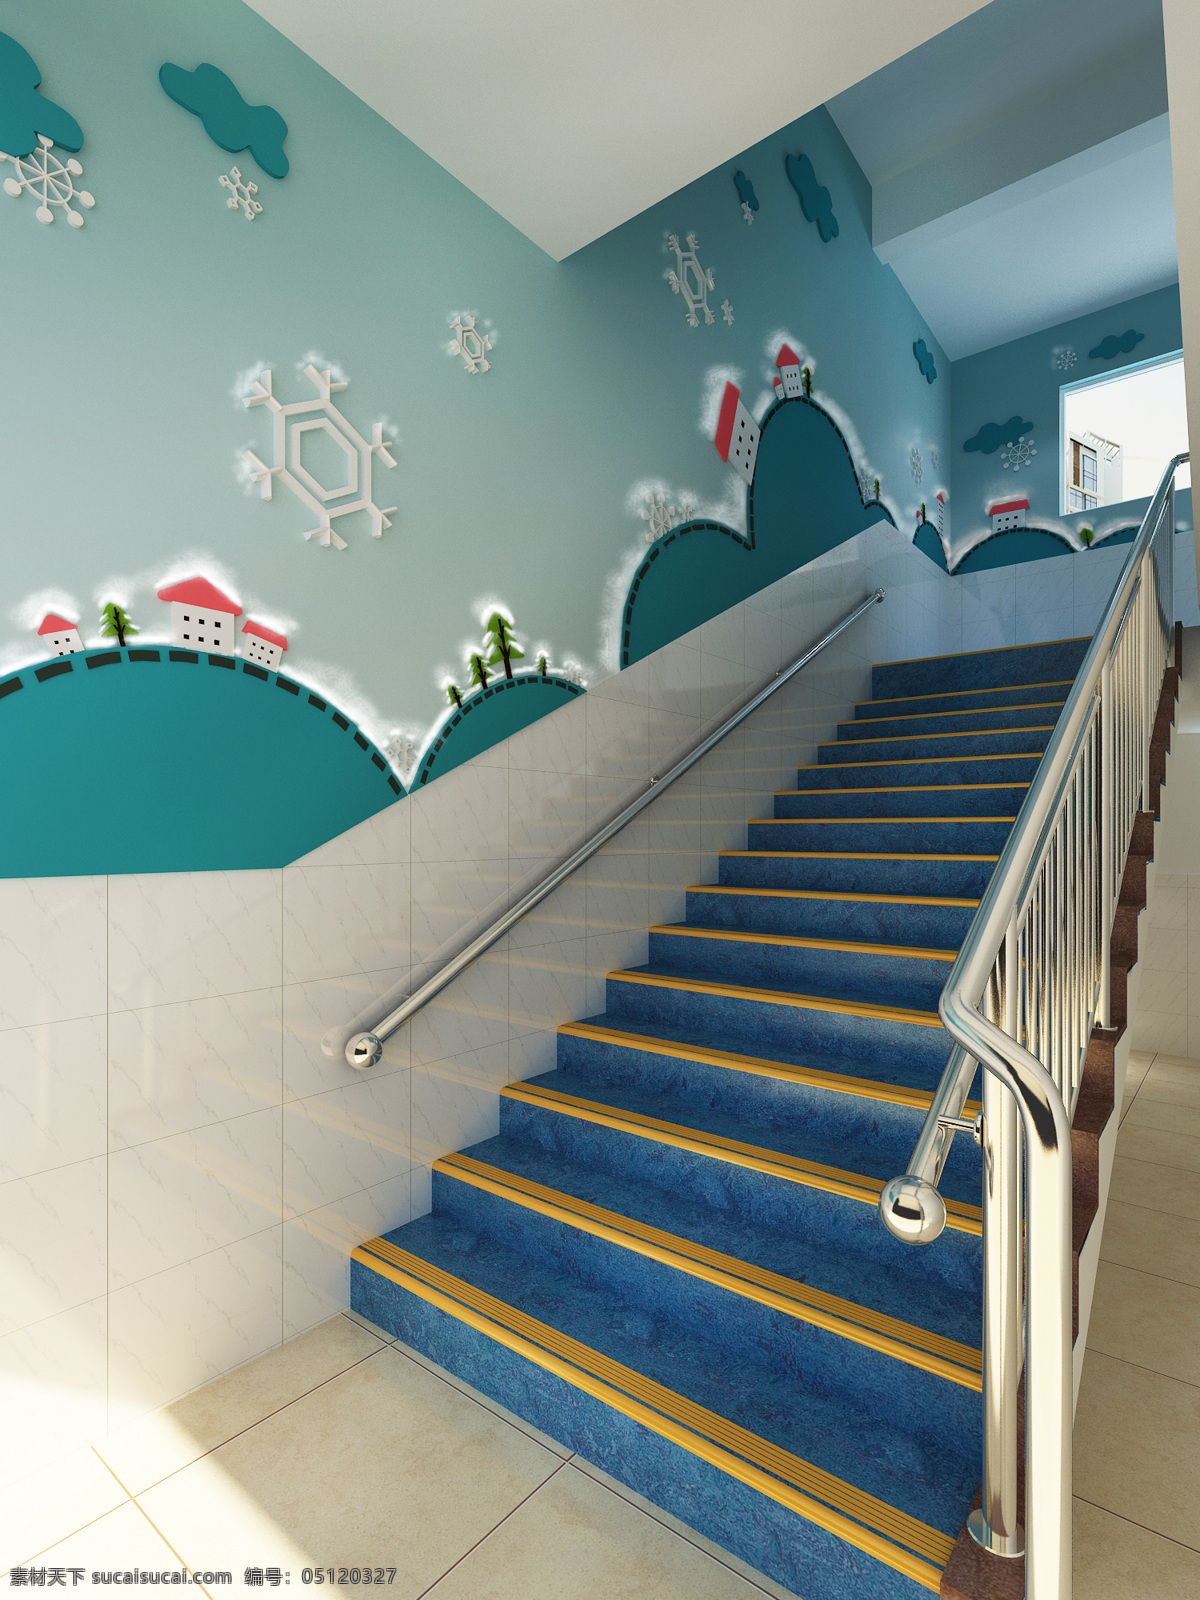 环境设计 立体 楼梯 墙画 室内设计 幼儿园 楼梯间 设计素材 模板下载 幼儿园楼梯间 家居装饰素材